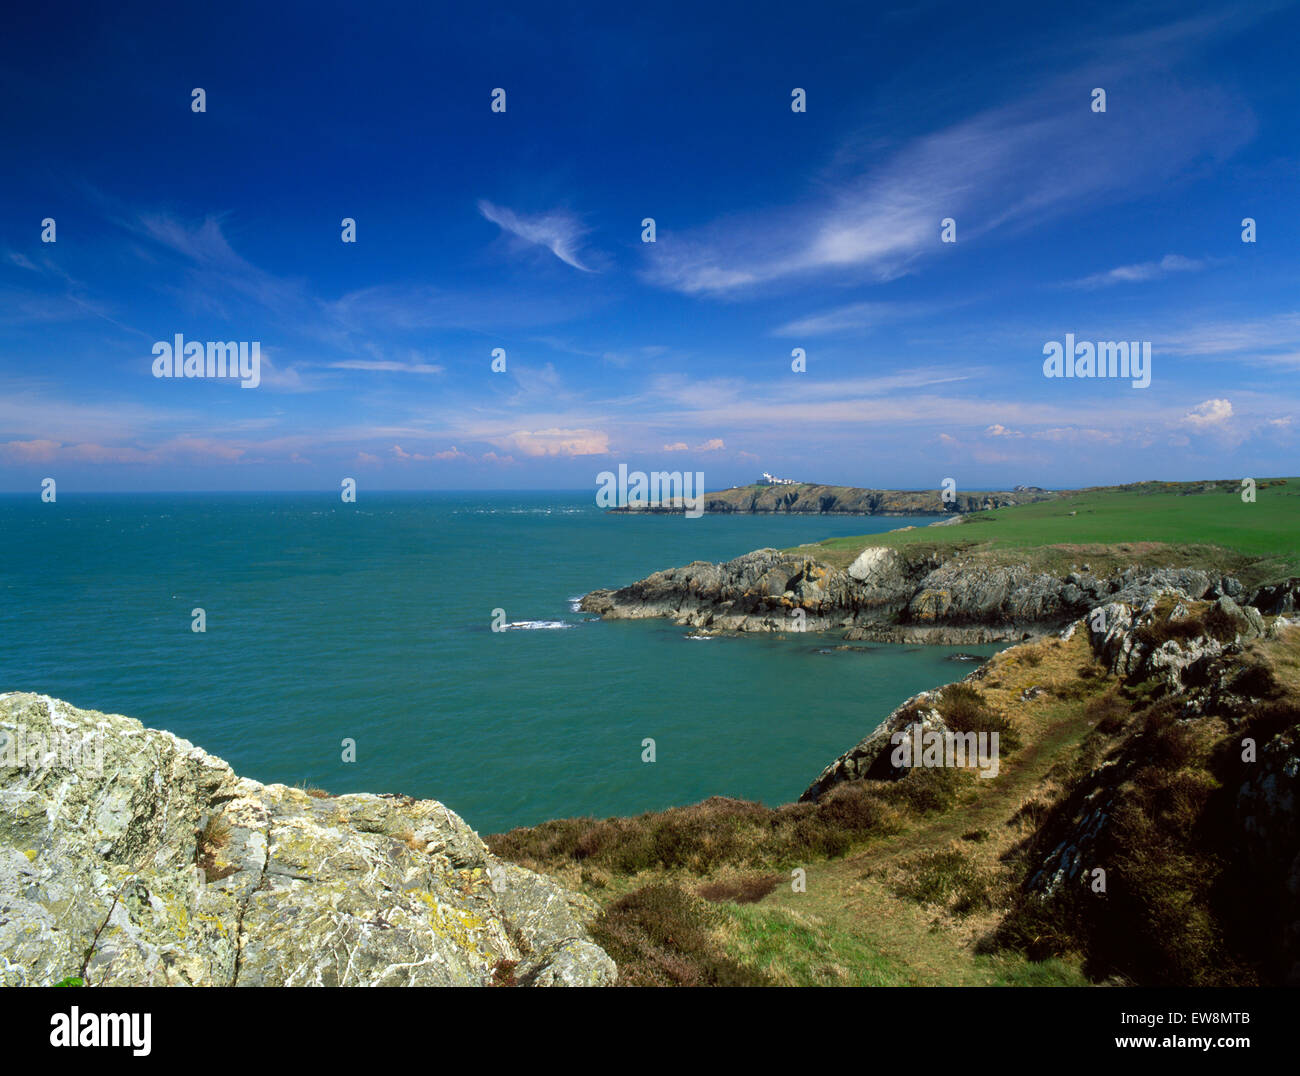 Isola di Anglesey sentiero costiero: faro & stazione pilota su Point Lynas promontorio sporgente nel mare irlandese dal porto Eilian. Foto Stock